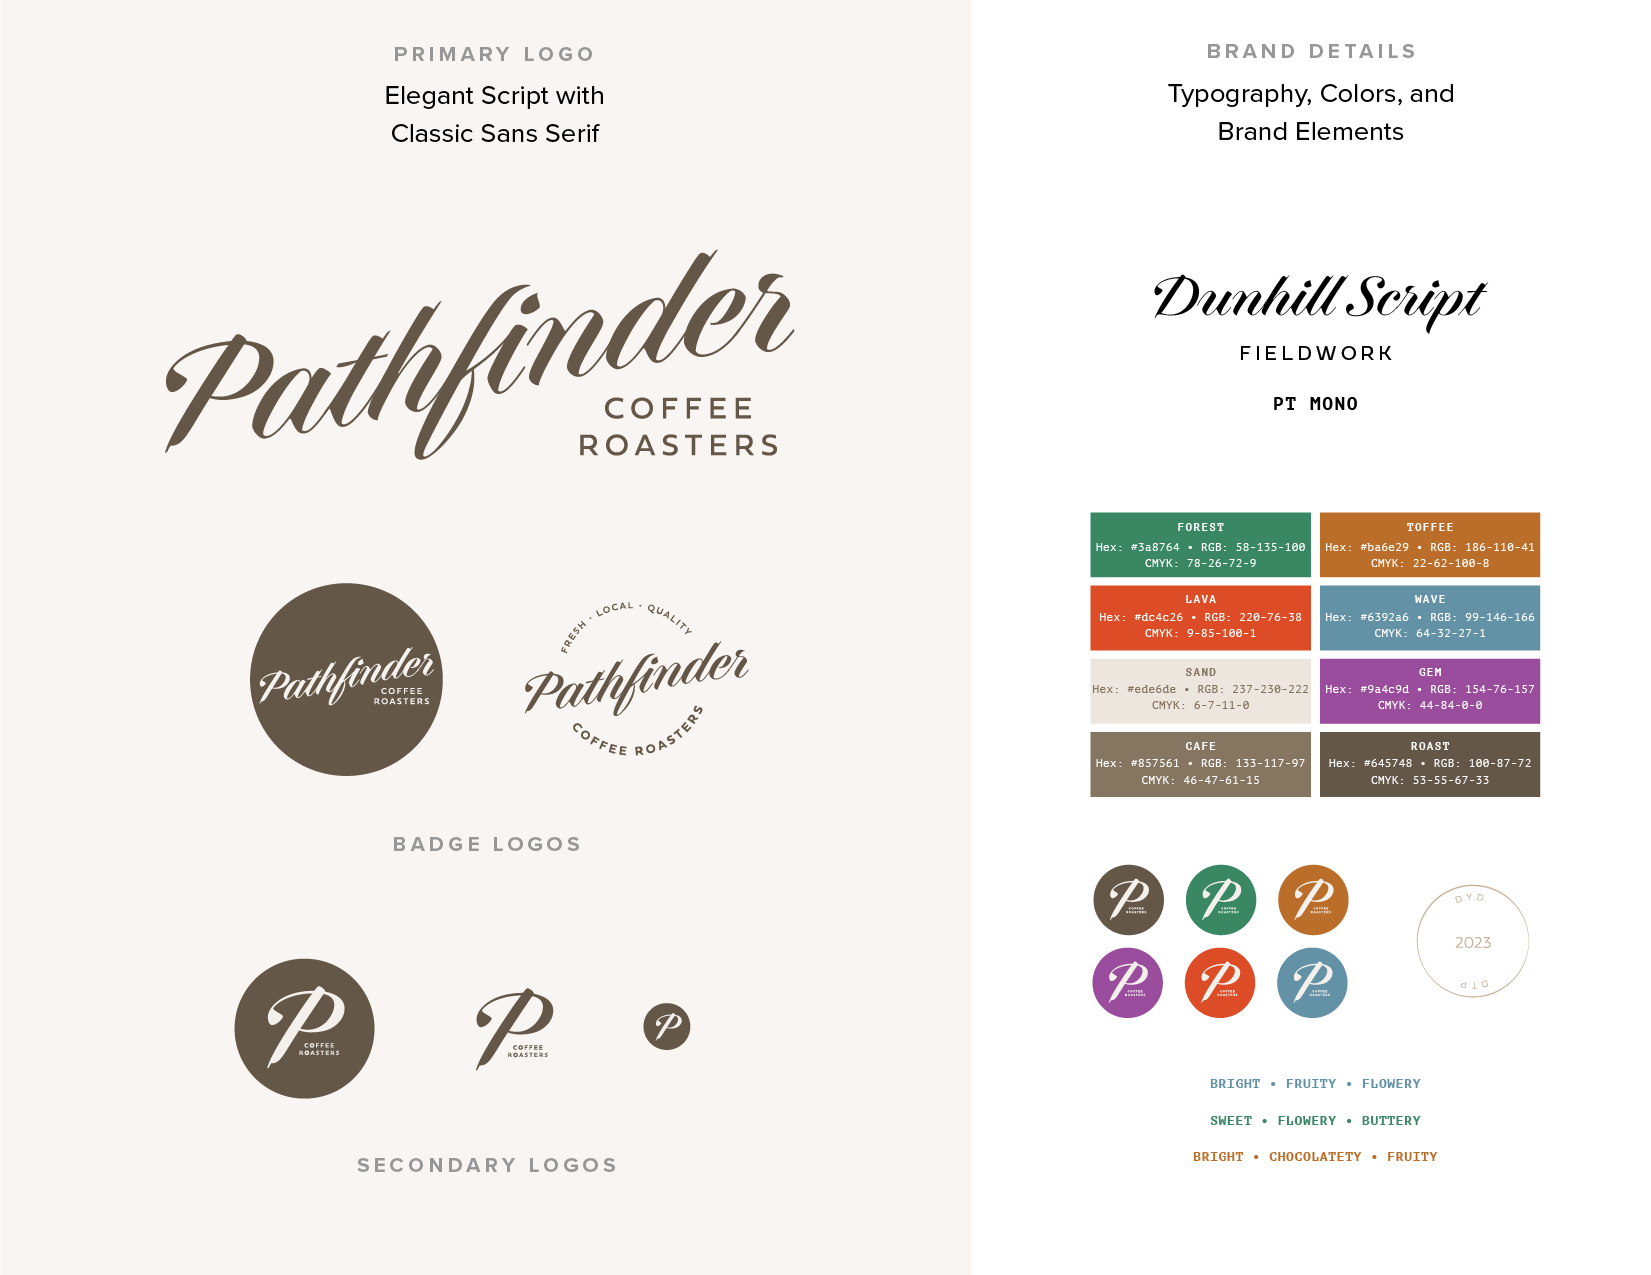 Pathfinder logo, branding, and coffee packaging